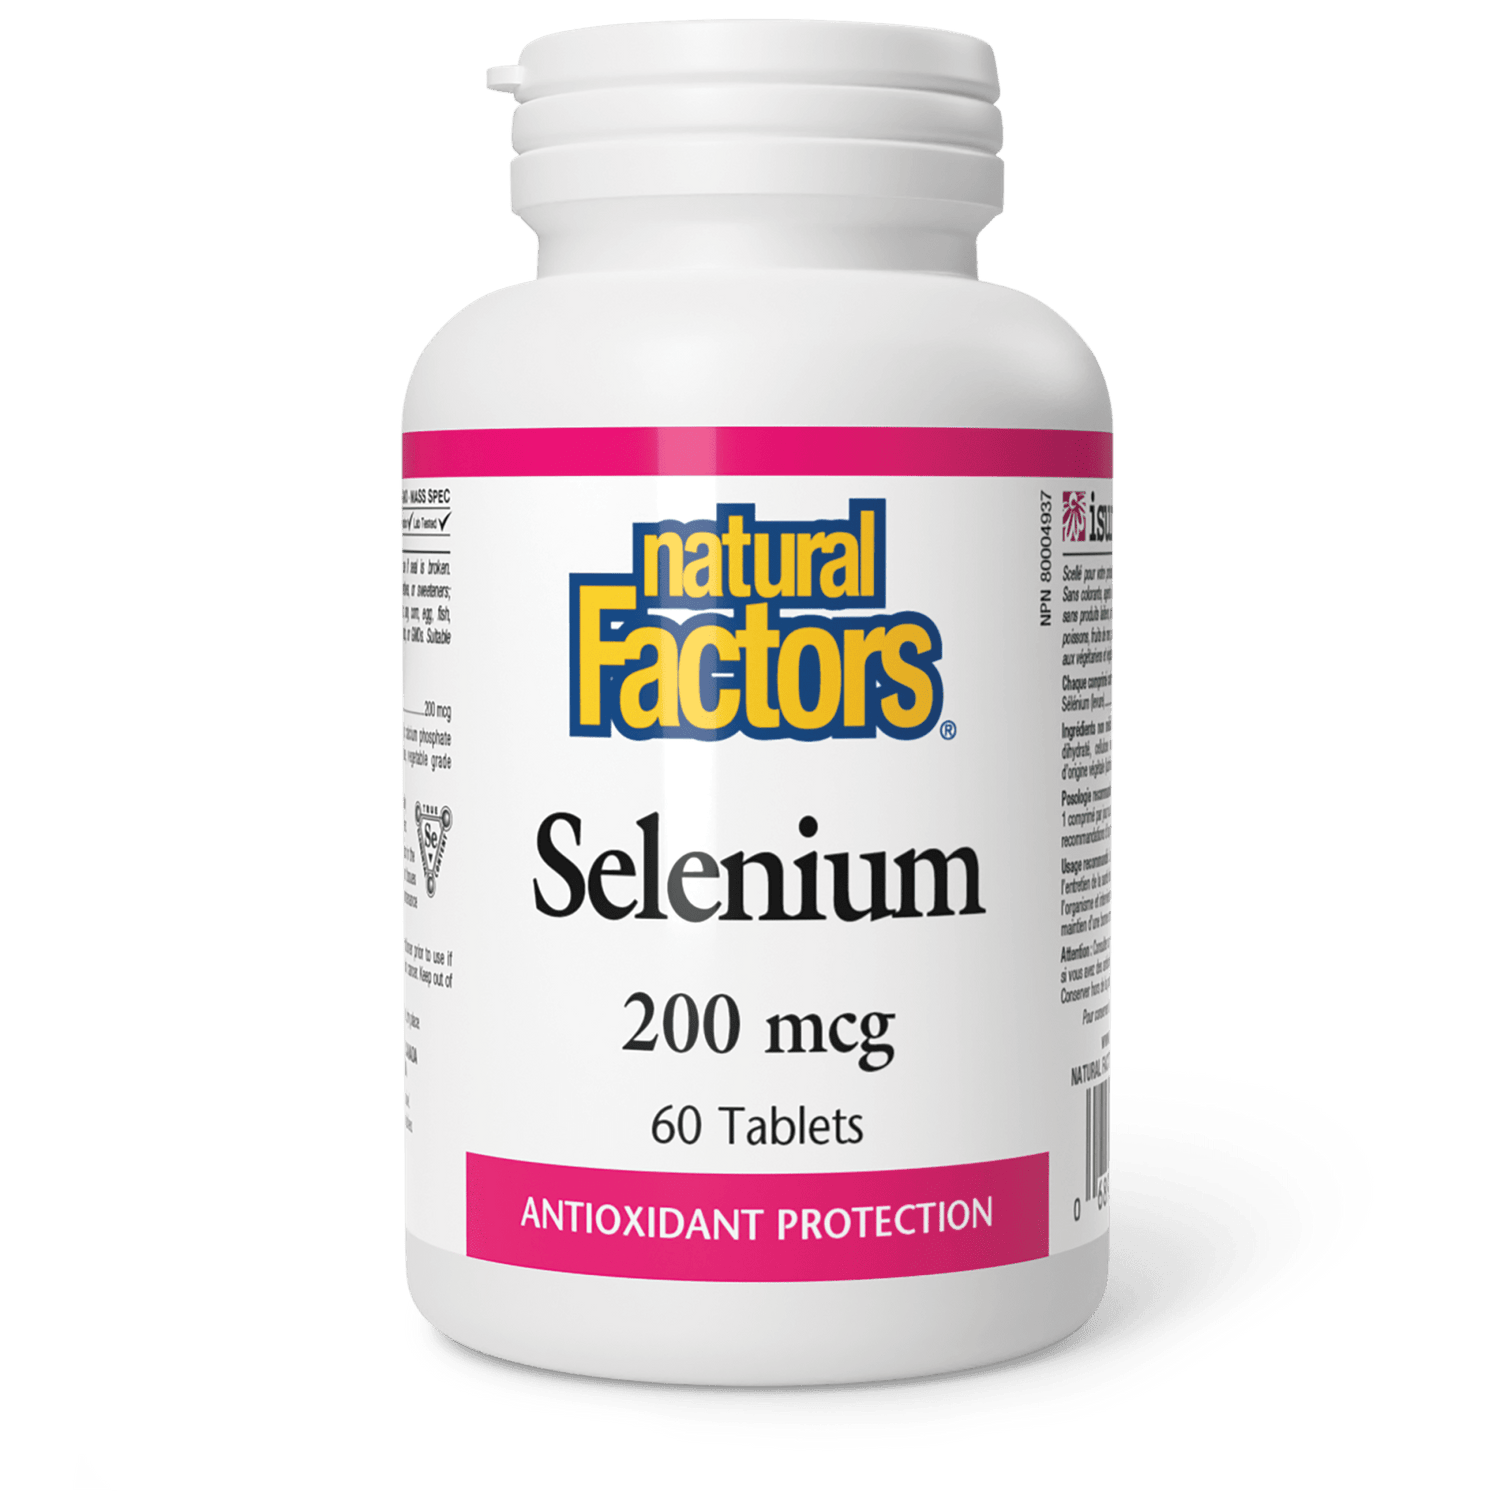 Selenium 200 mcg, Natural Factors|v|image|1670